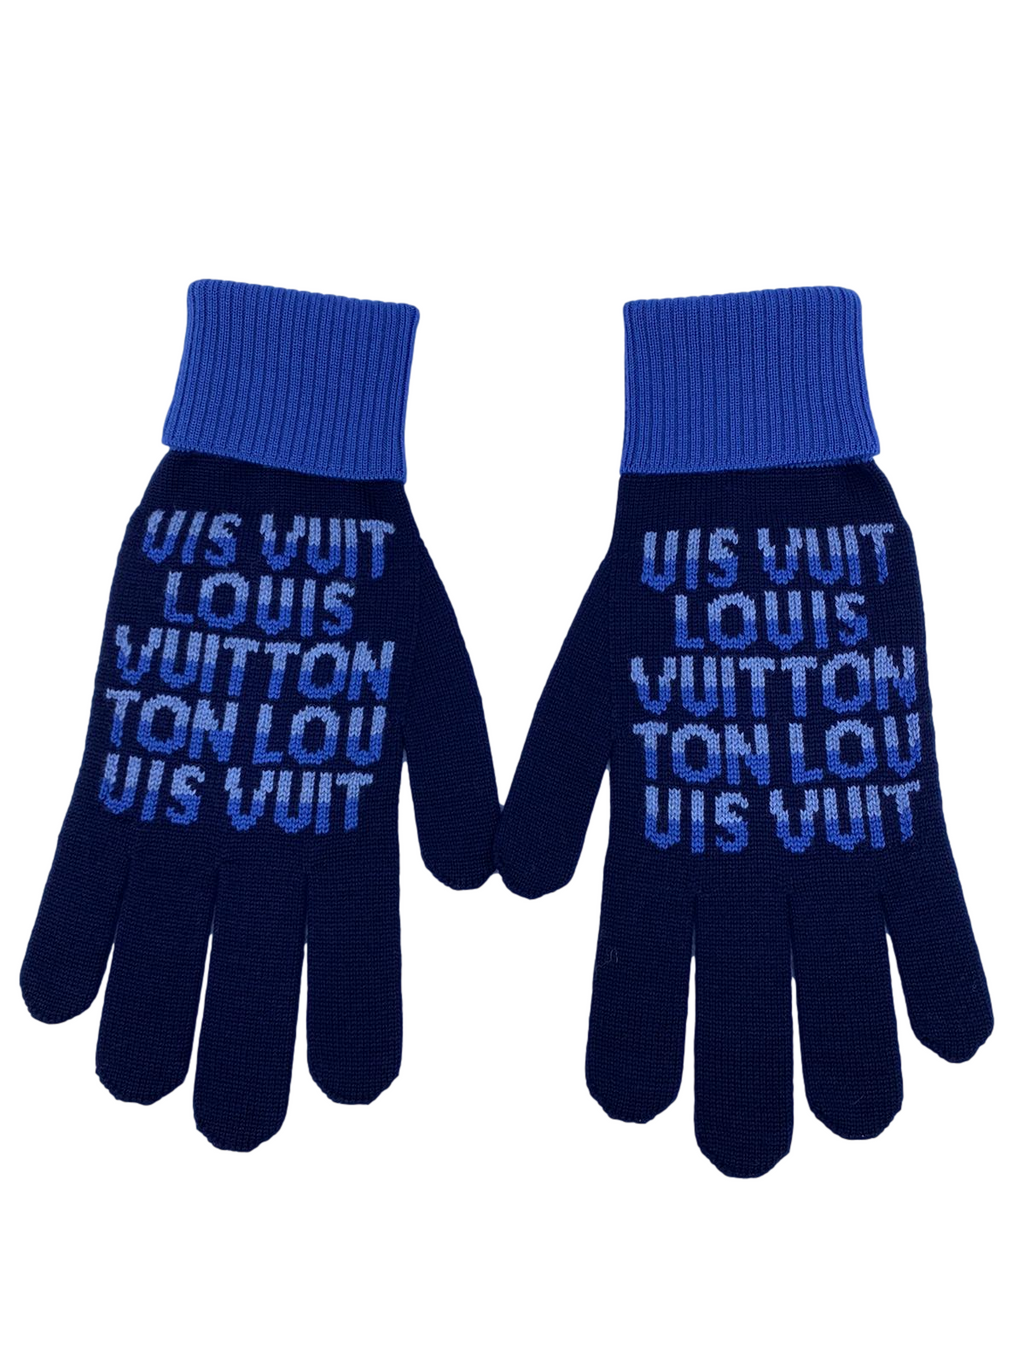 Louis Vuitton Gloves for Men - Vestiaire Collective